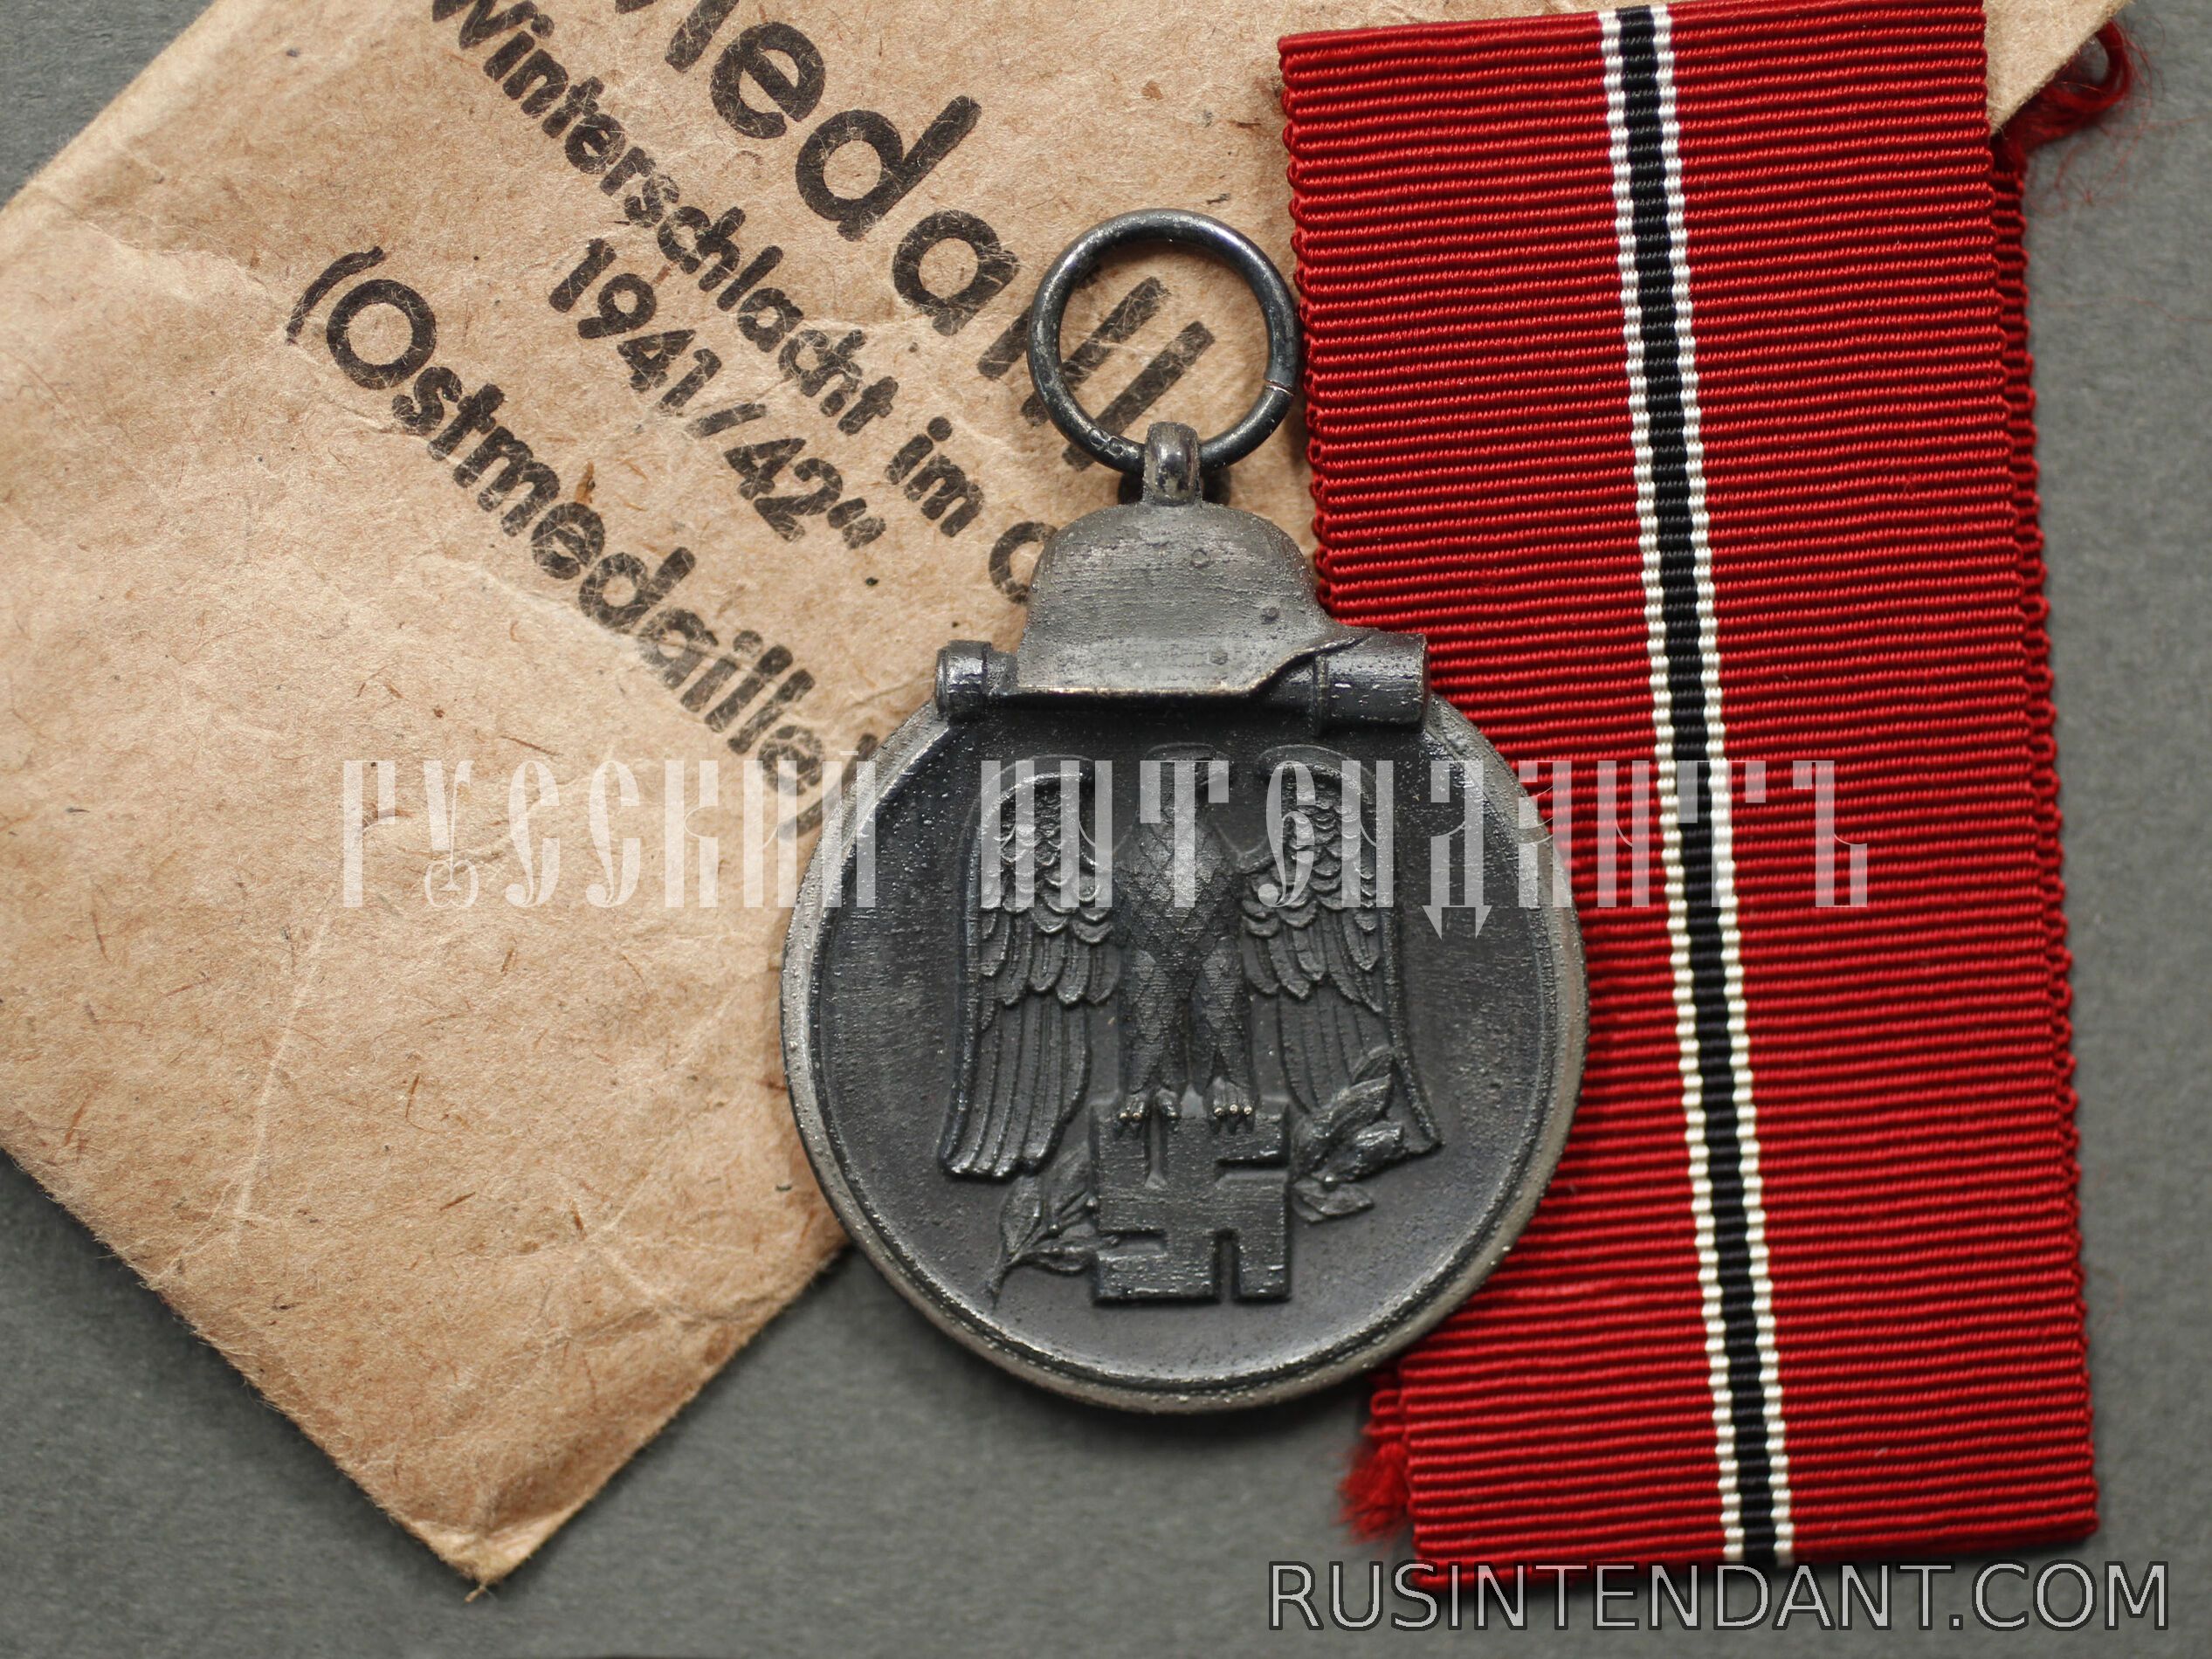 Фото 1: Медаль «За зимнее сражение на Востоке 1941/42» 